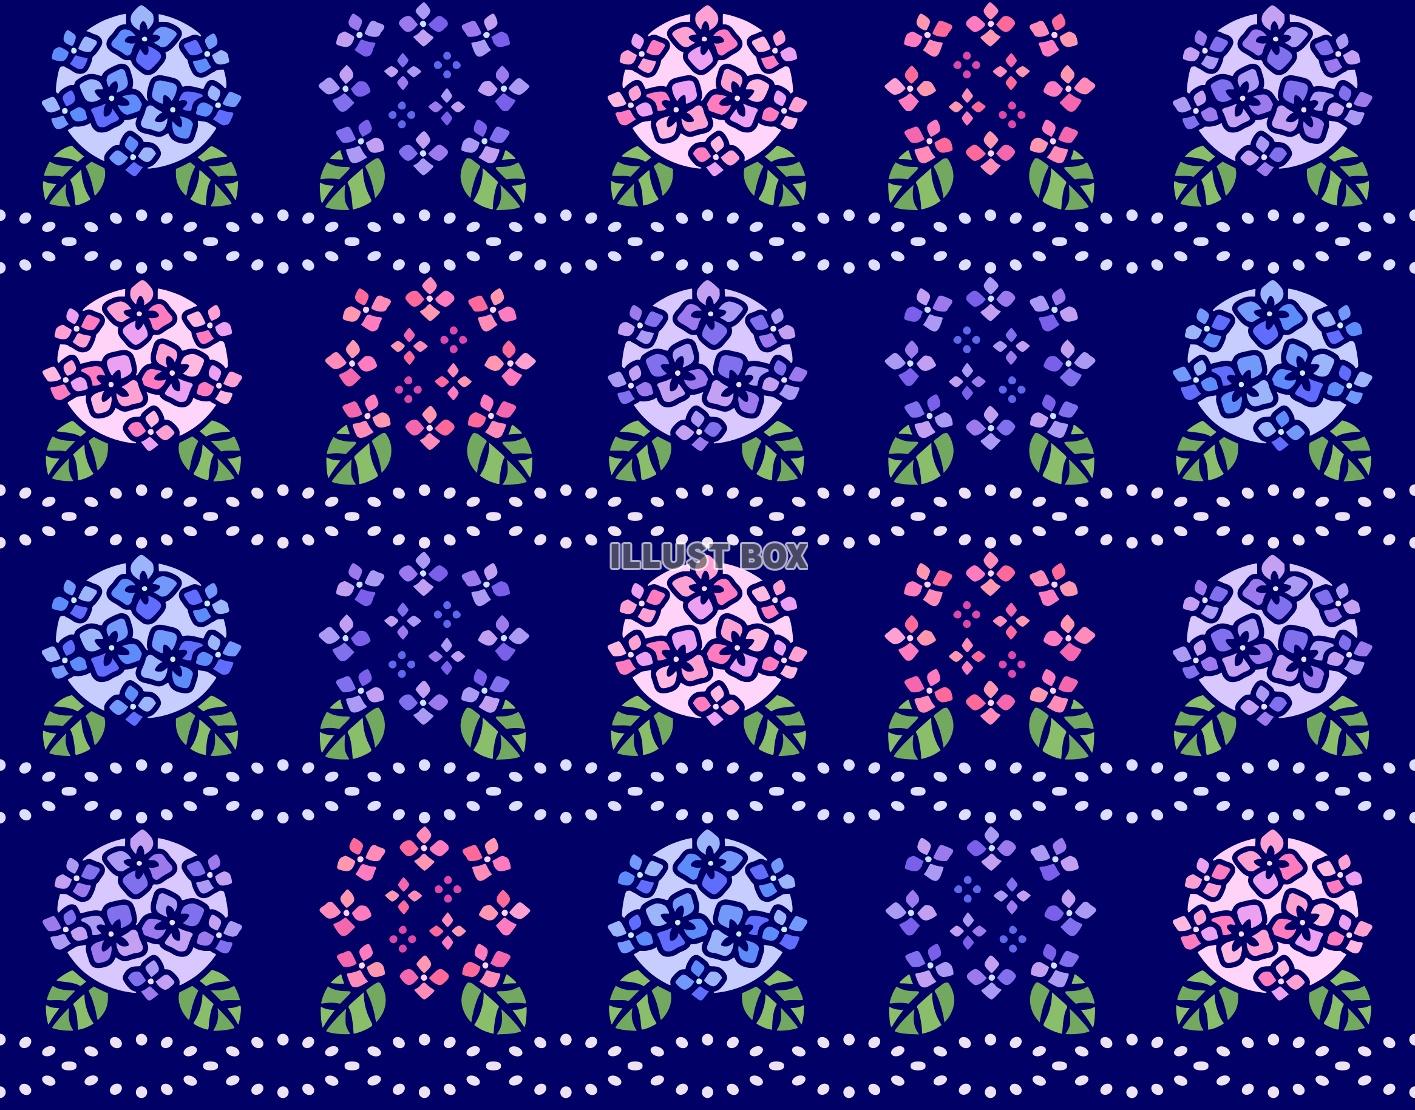 並んで咲くあじさいの背景素材(紺地･JPEG)